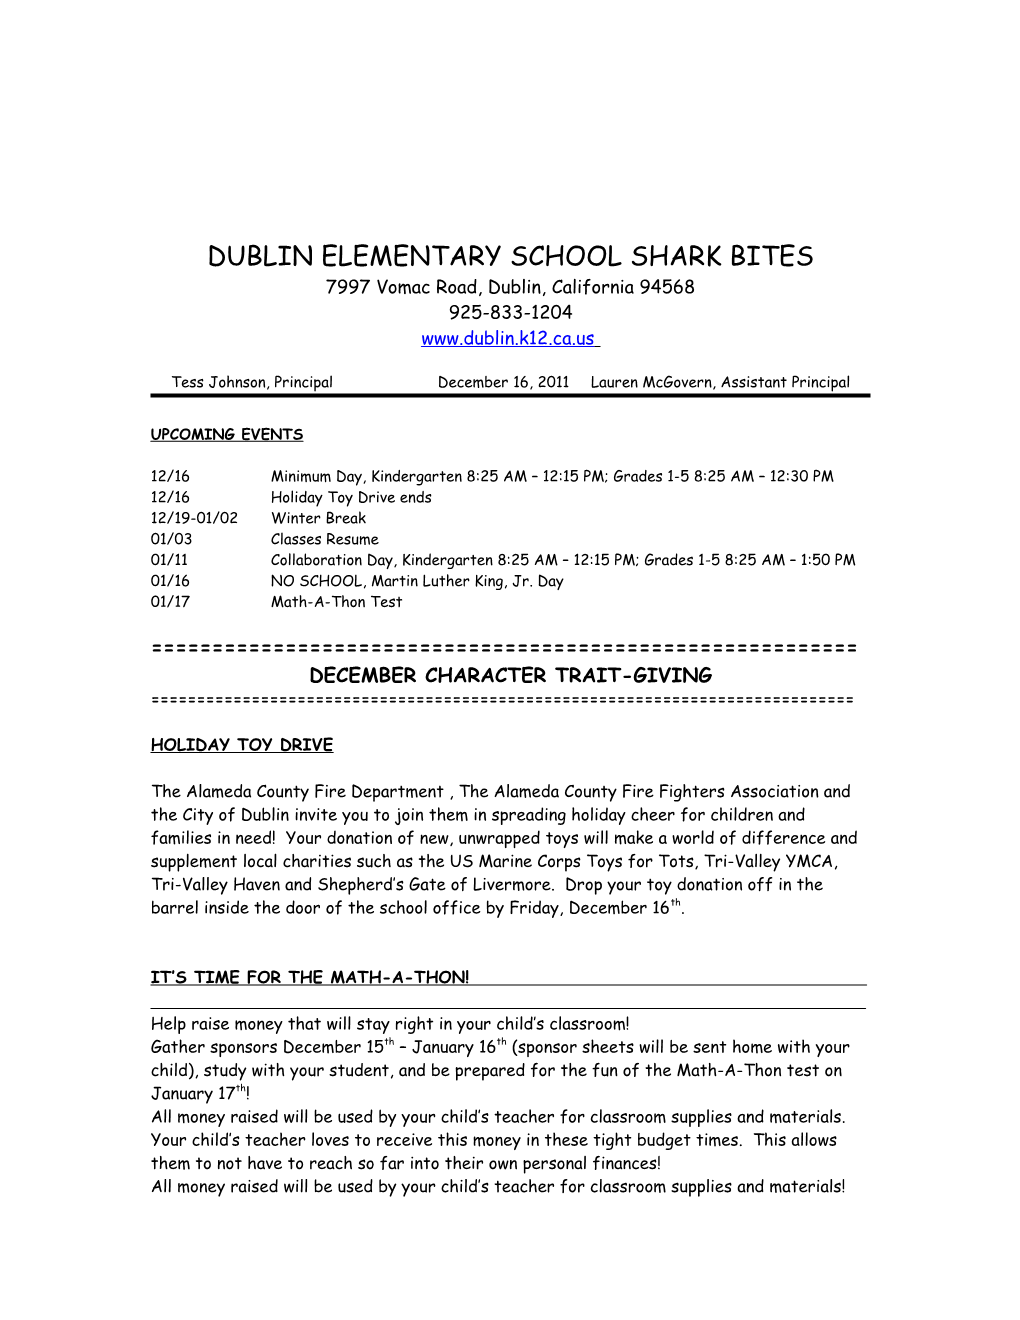 Dublinelementary School Shark Bites